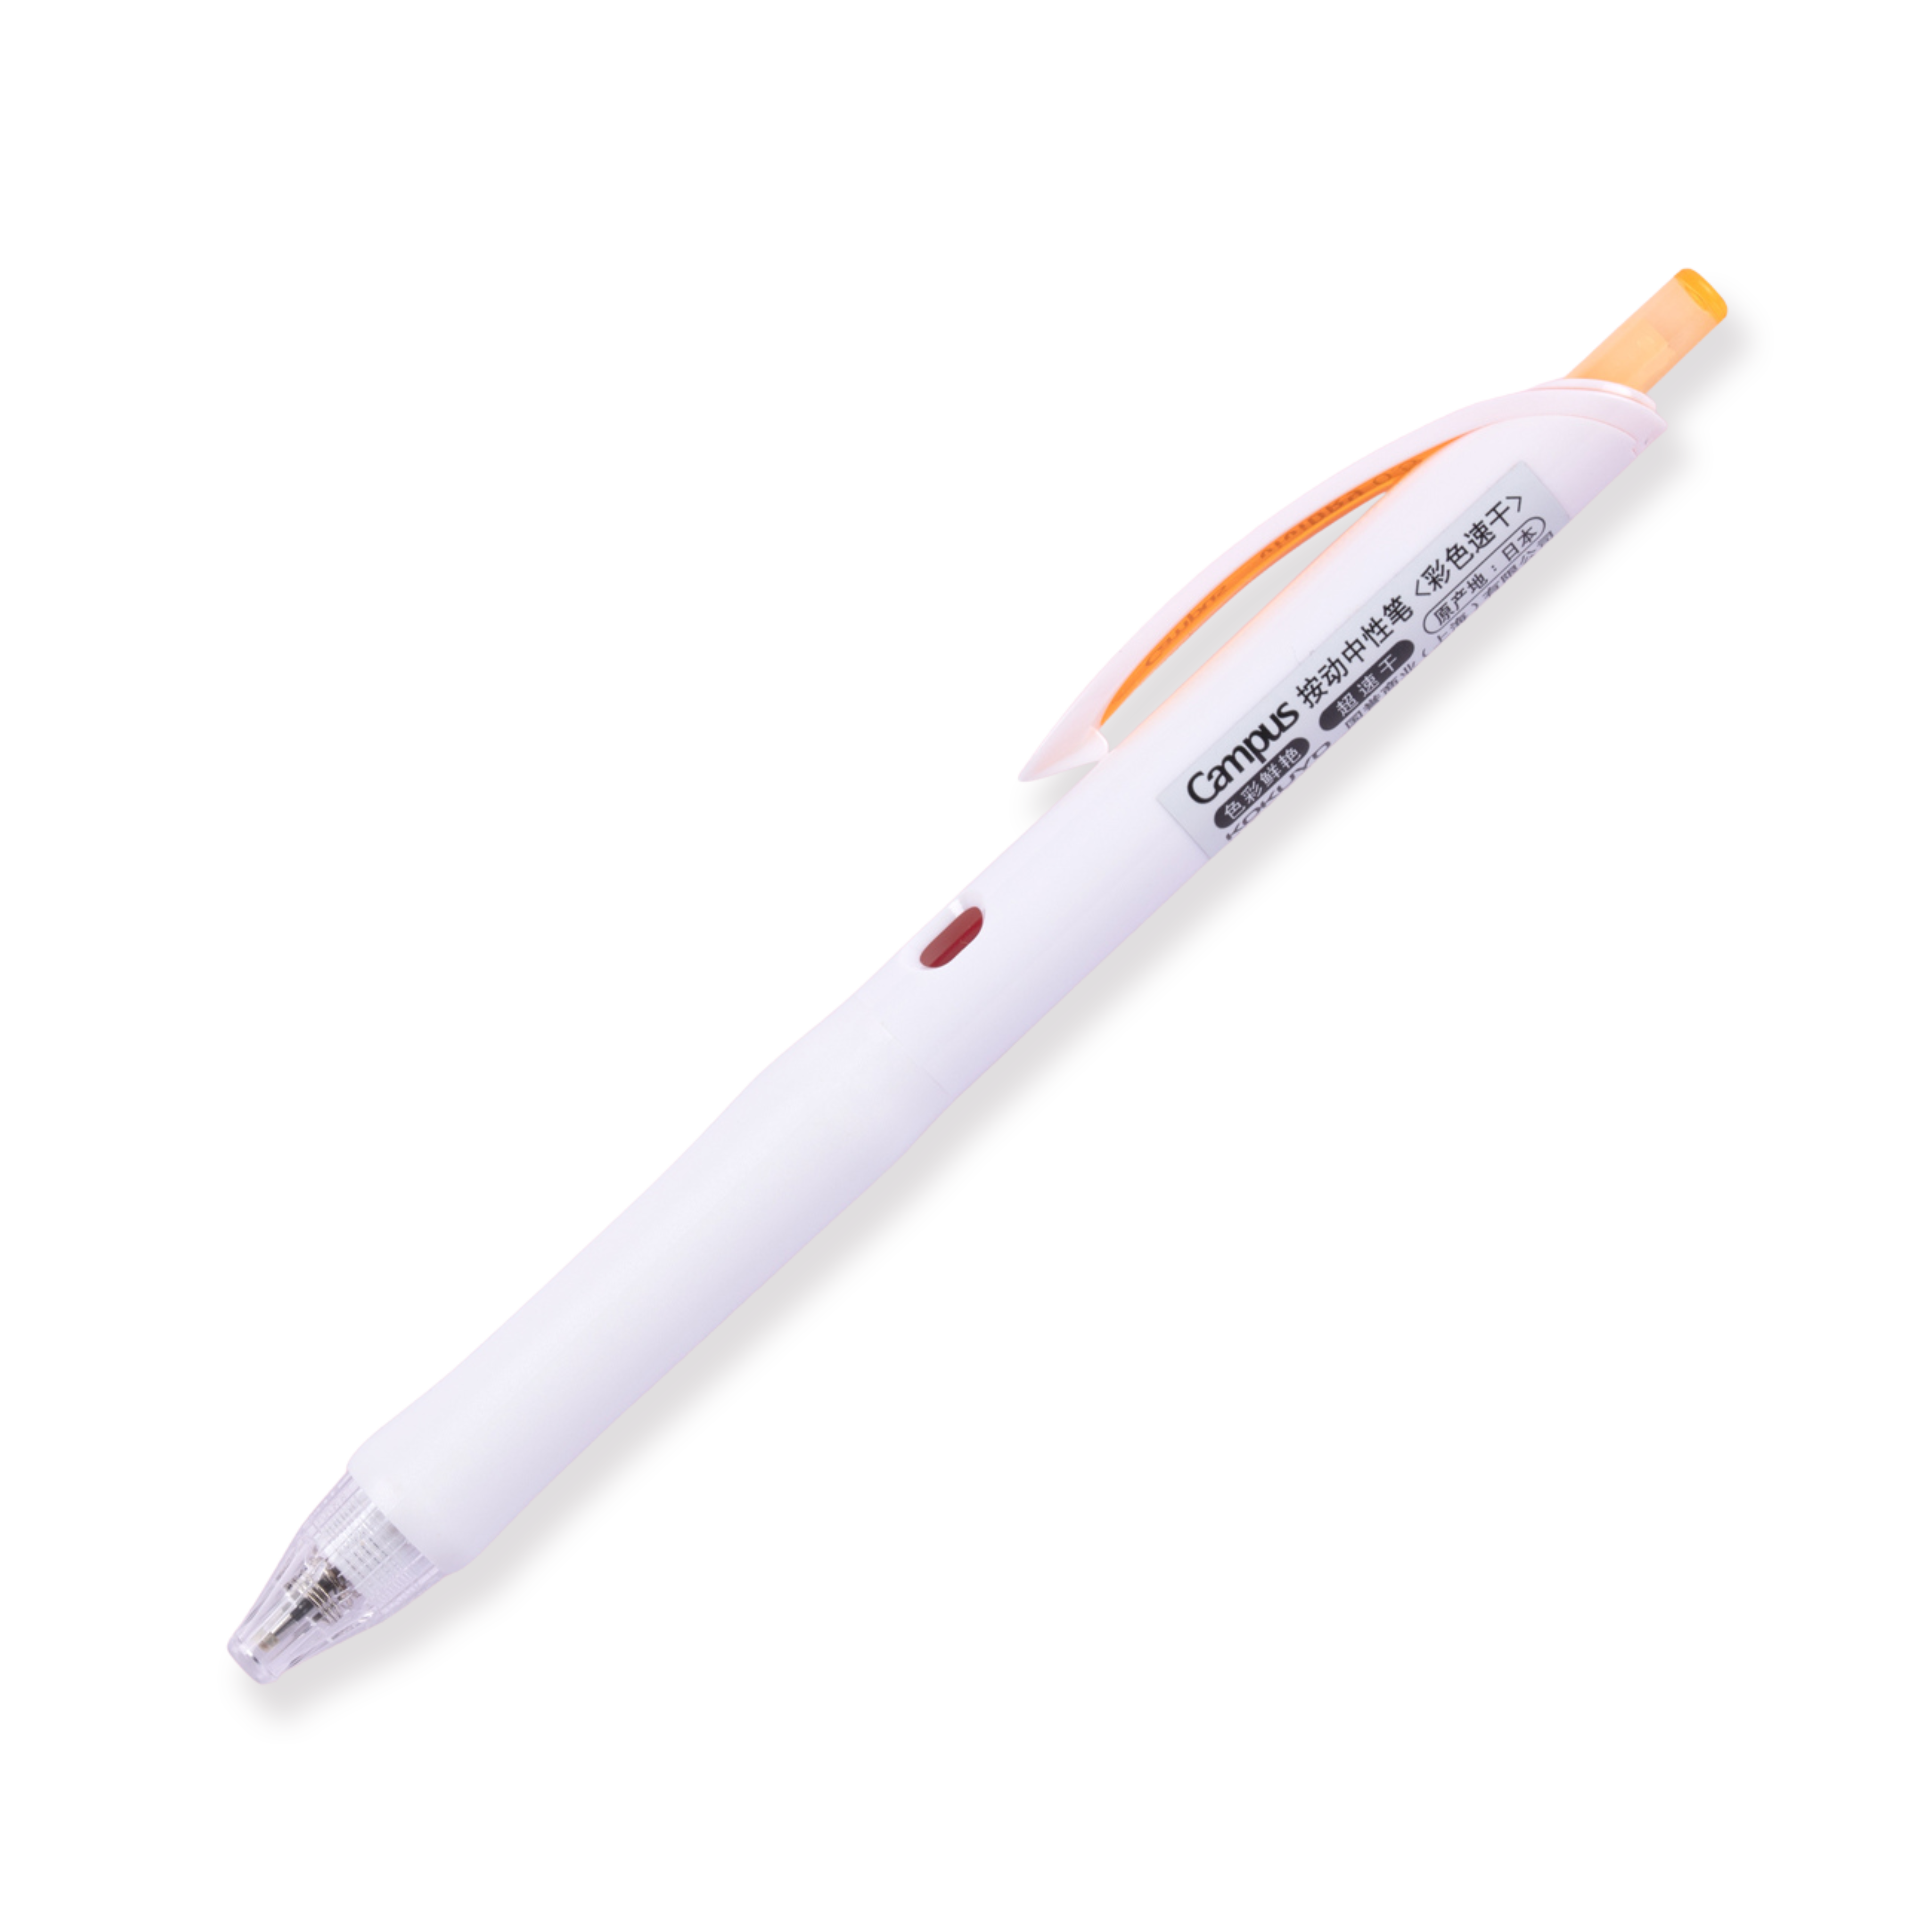 Kokuyo Campus viviDRY Retractable Gel Pen - 0.5 mm - Orange